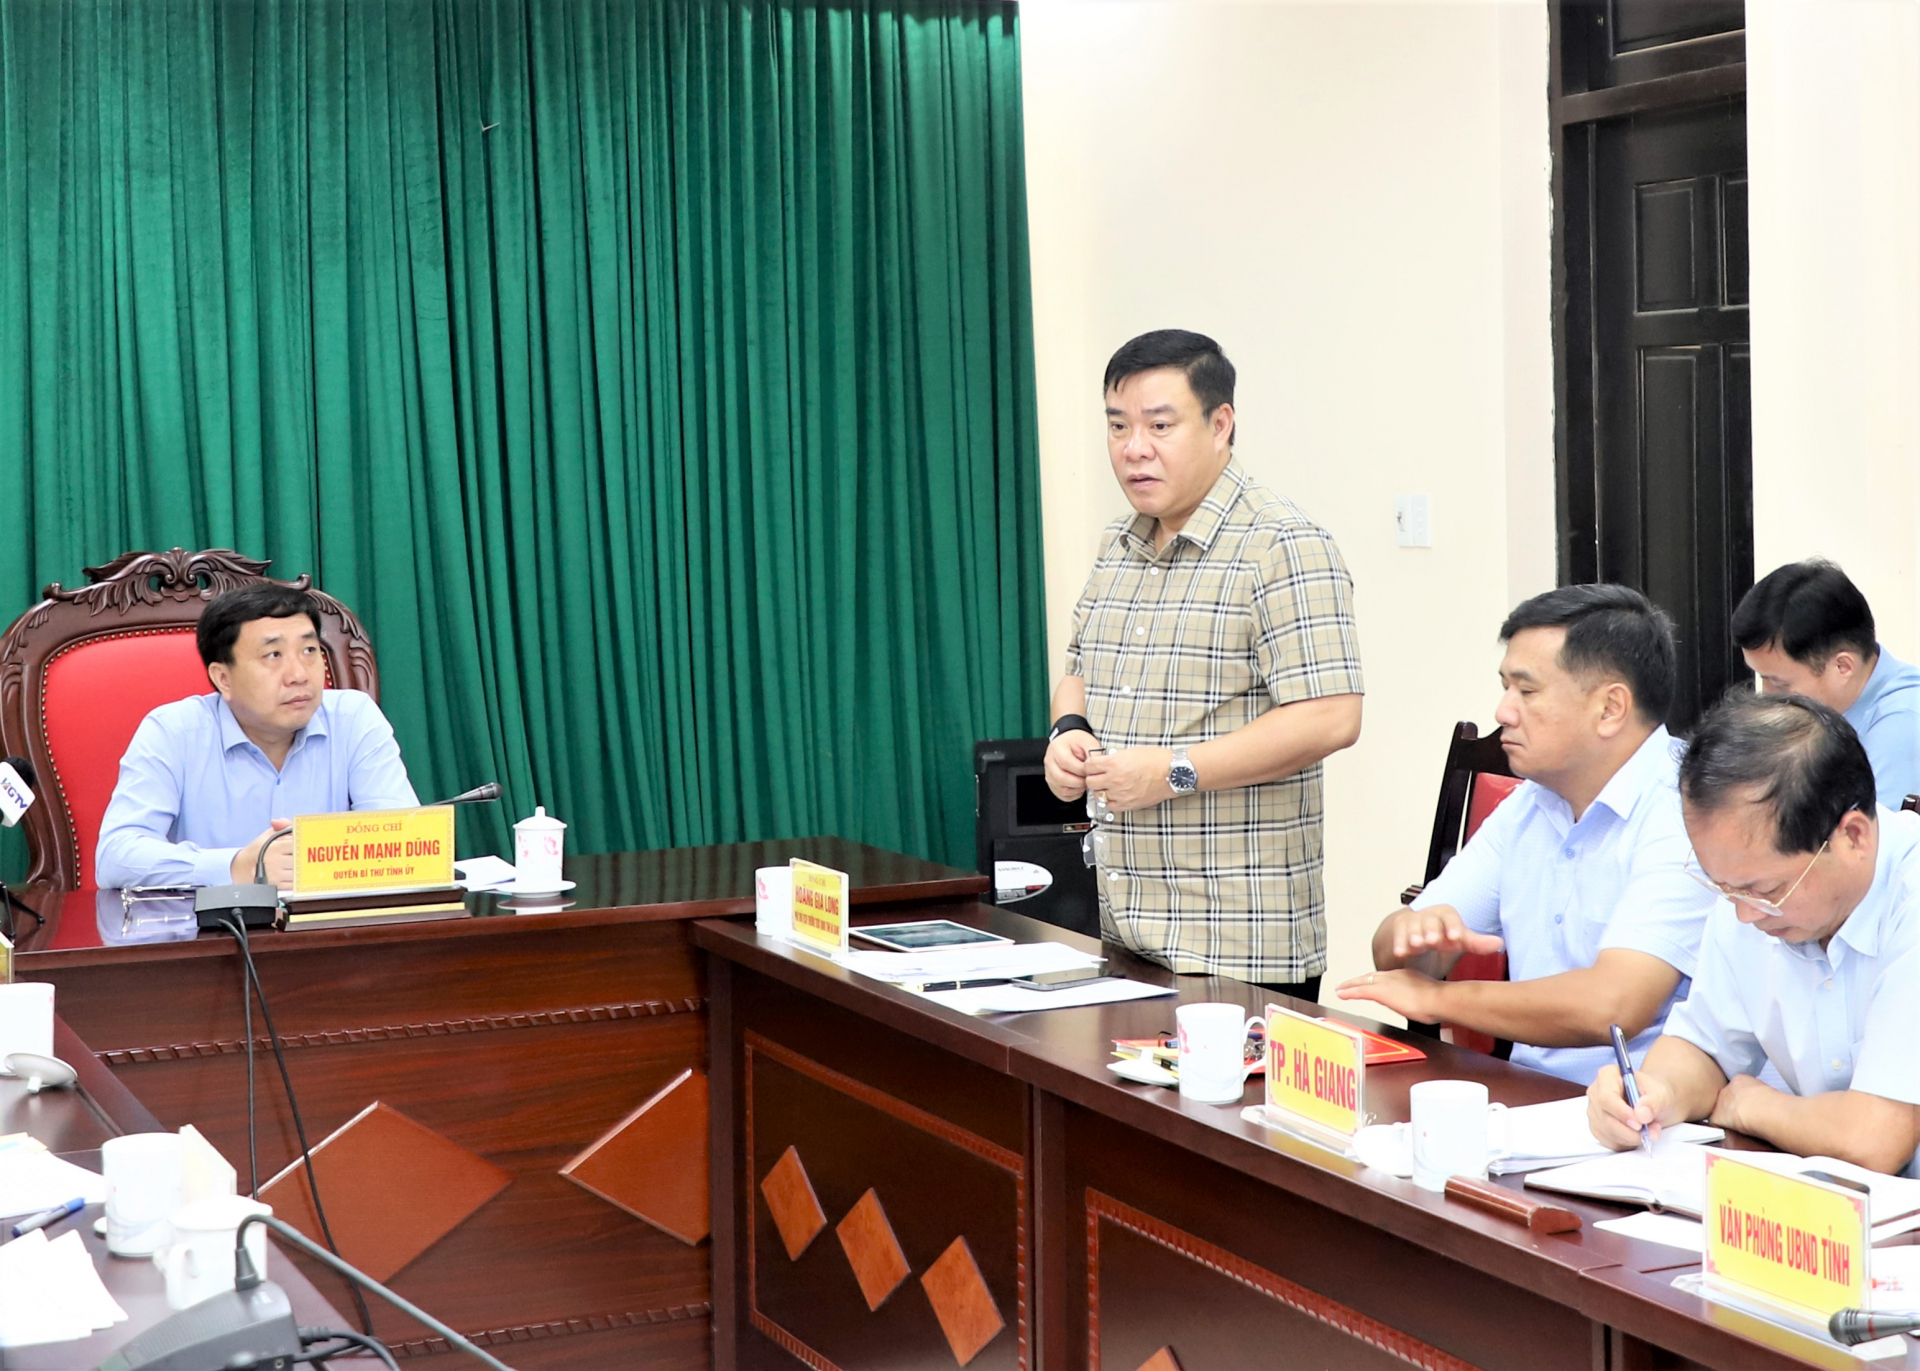 Phó Chủ tịch Thường trực UBND tỉnh Hoàng Gia Long yêu cầu các đơn vị chức năng cần siết chặt quản lý việc giết mổ gia súc.